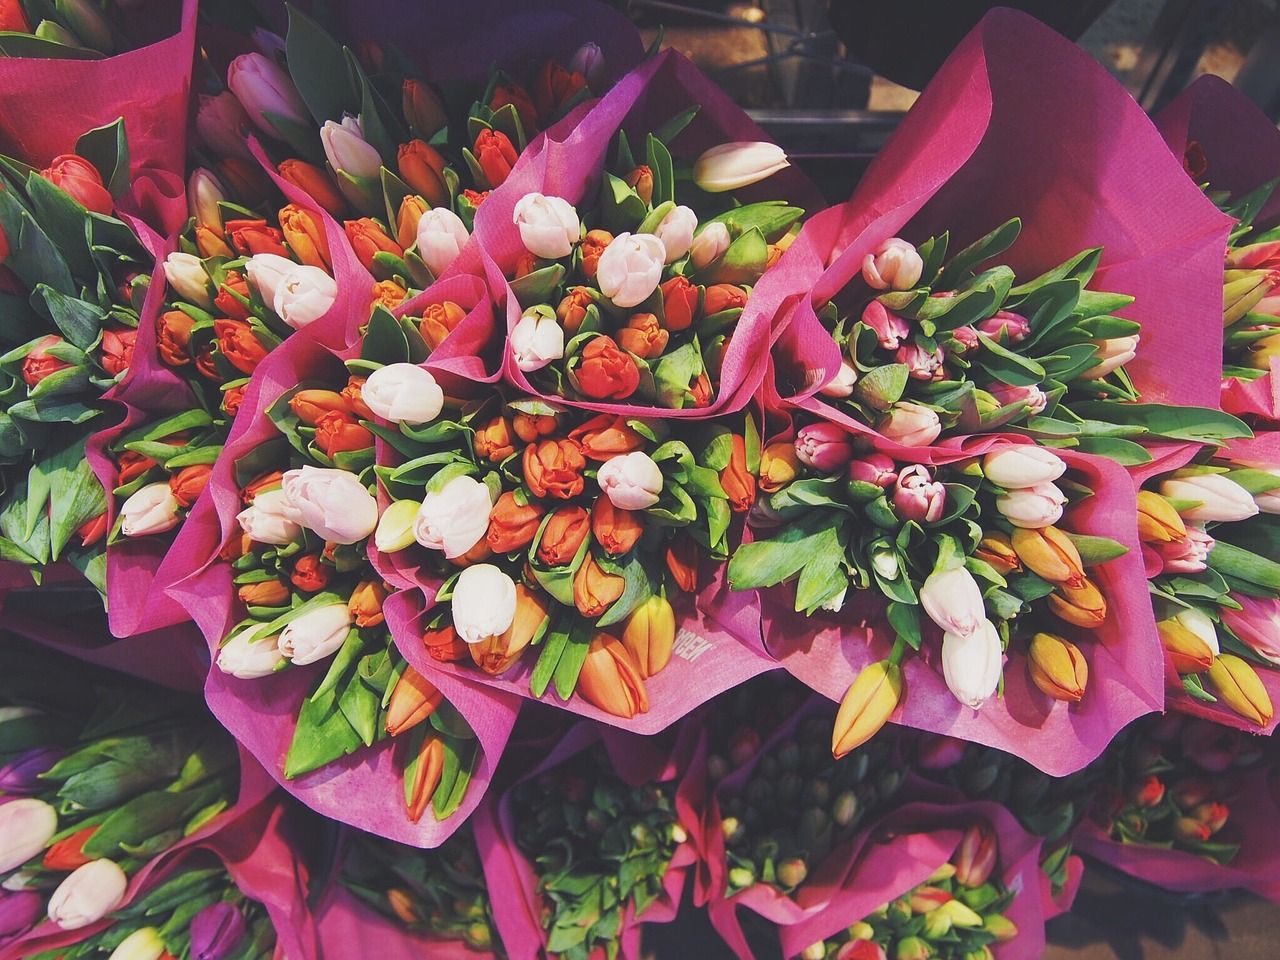 Bukiet dla ukochanej – jakie kwiaty powinny się w nim znaleźć?